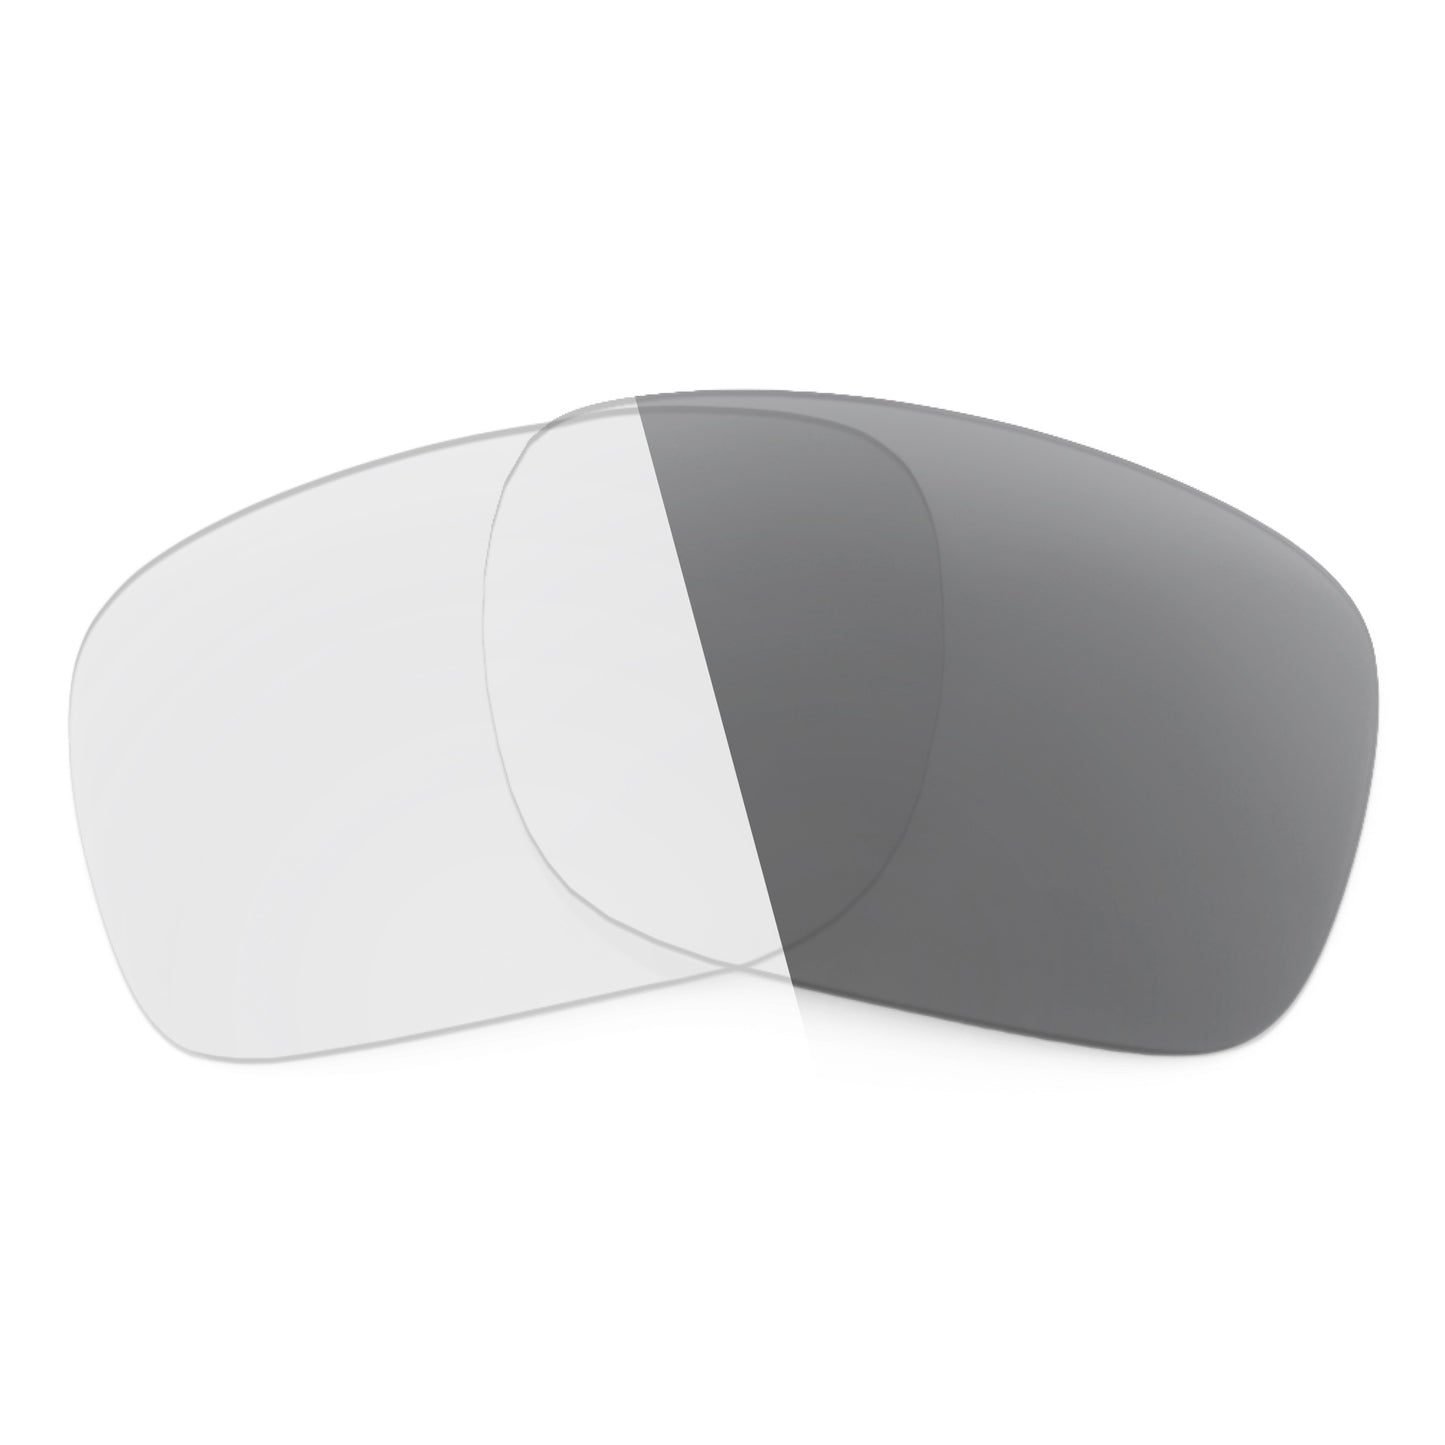 Revant replacement lenses for Oakley Crossrange Non-Polarized Adapt Gray Photochromic